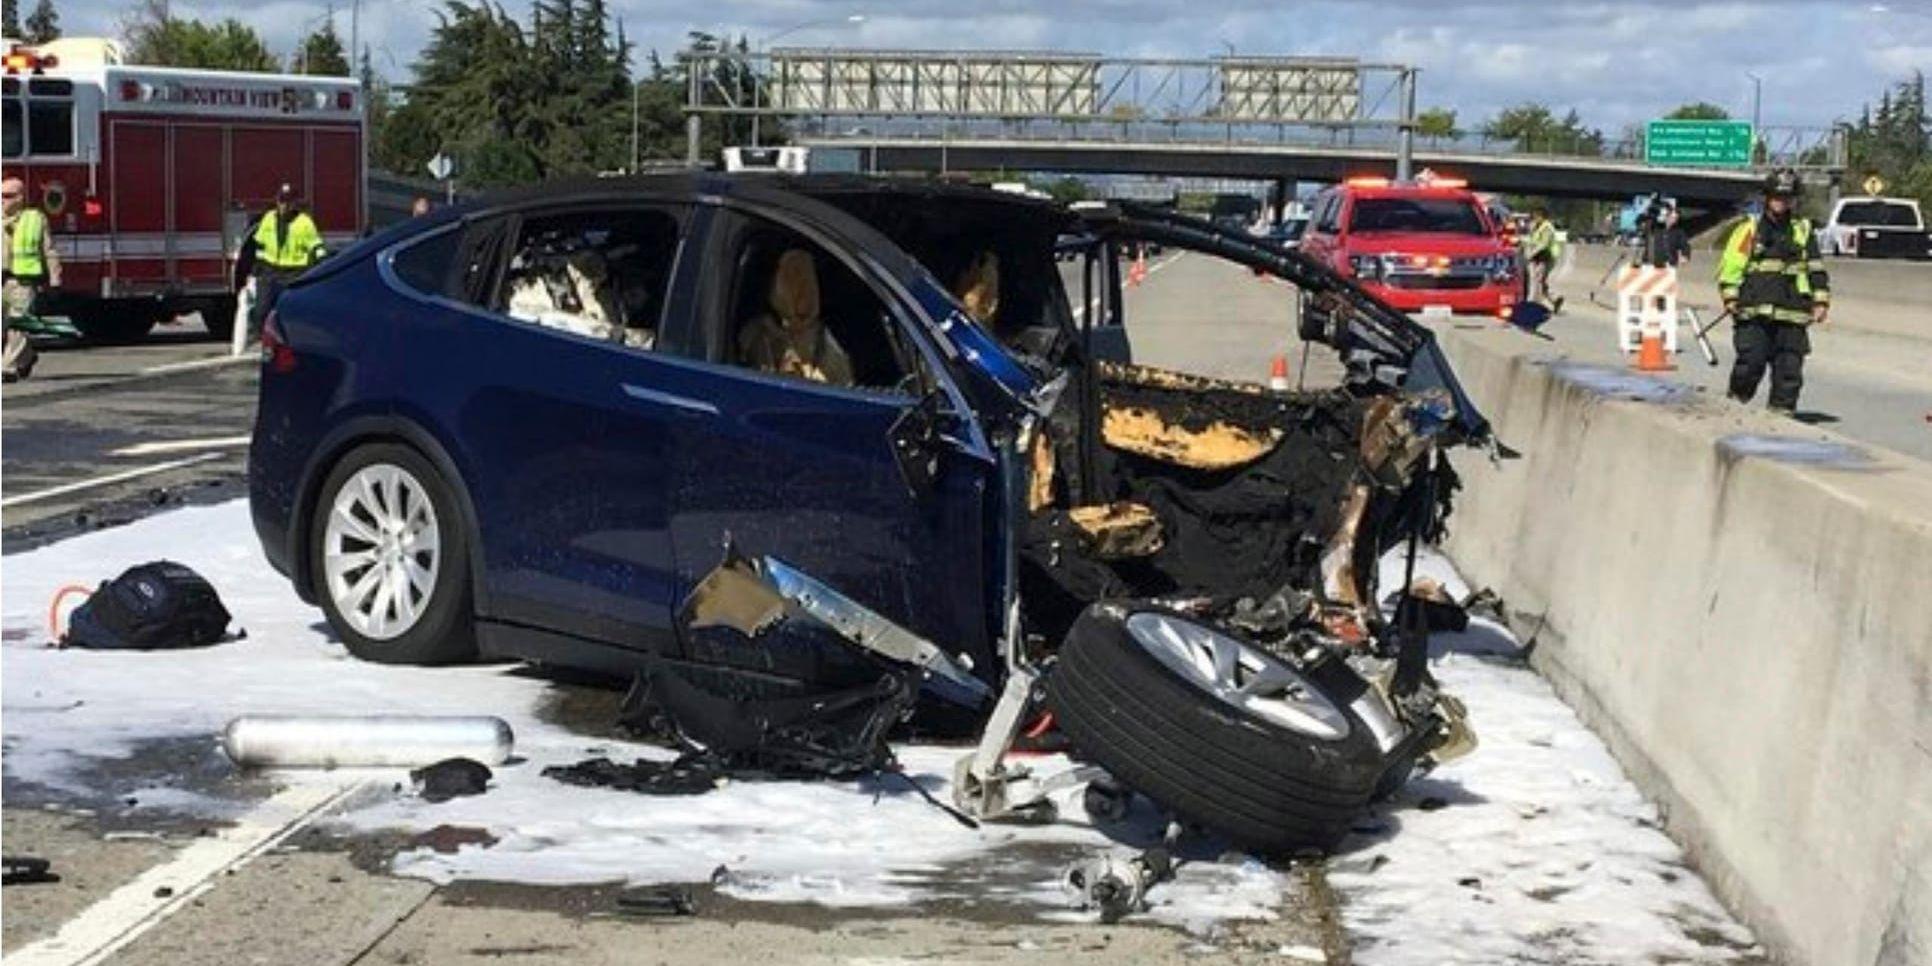 En olycka i Mountain View, Kalifornien, i mars är ett exempel som lett till ifrågasättande av autopiloten i Teslas bilar. Nu kräver konsumentorganisationer i USA att Teslas marknadsföring granskas.